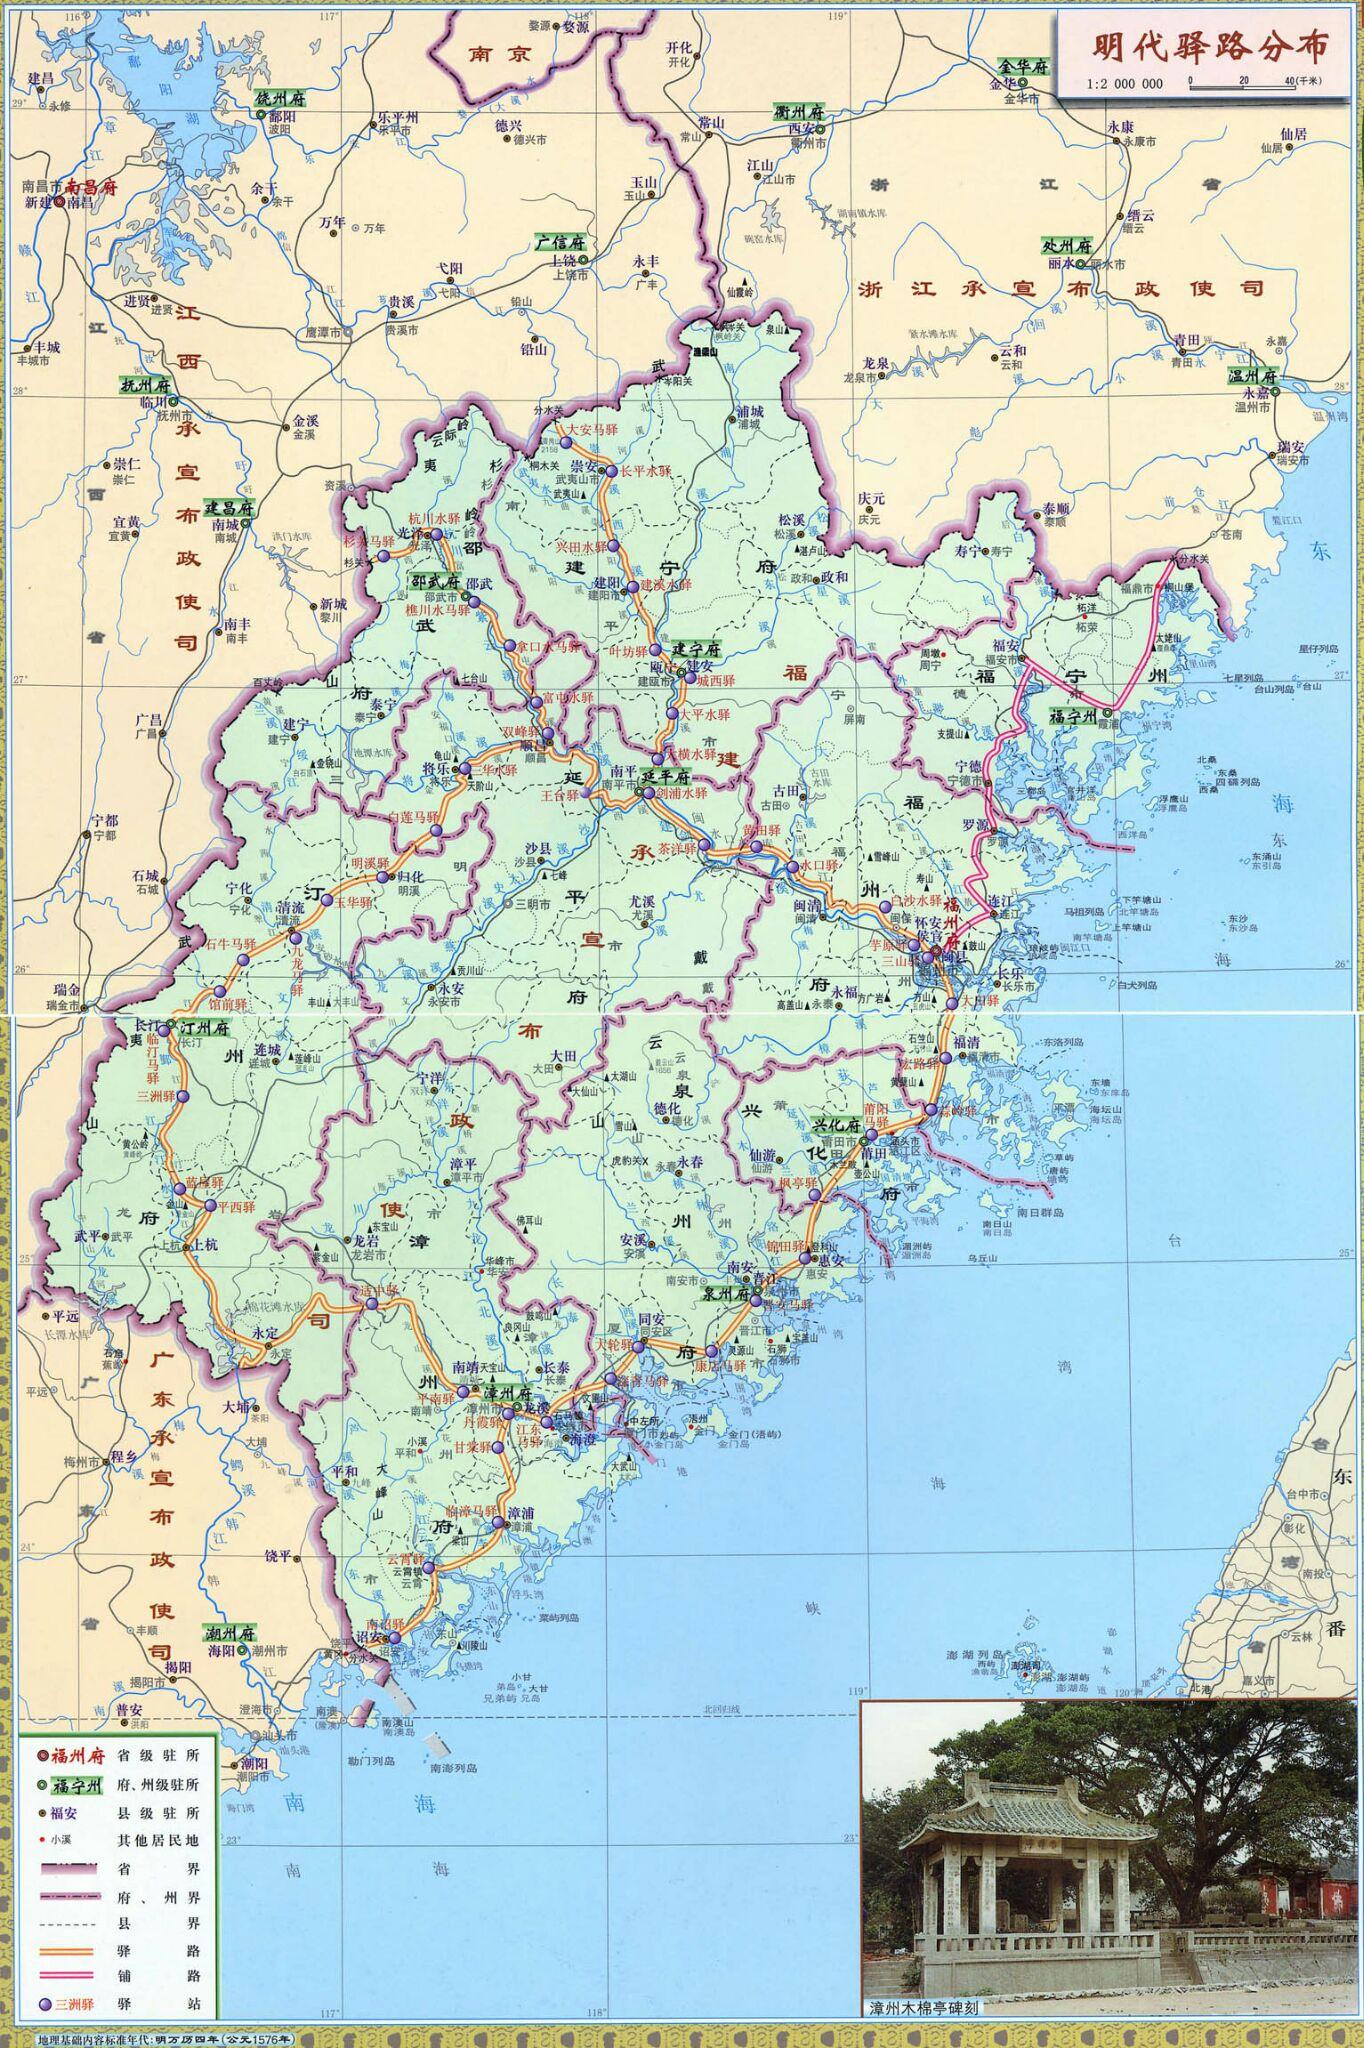 福州市区地图|福州市区地图全图高清版大图片|旅途风景图片网|www.visacits.com